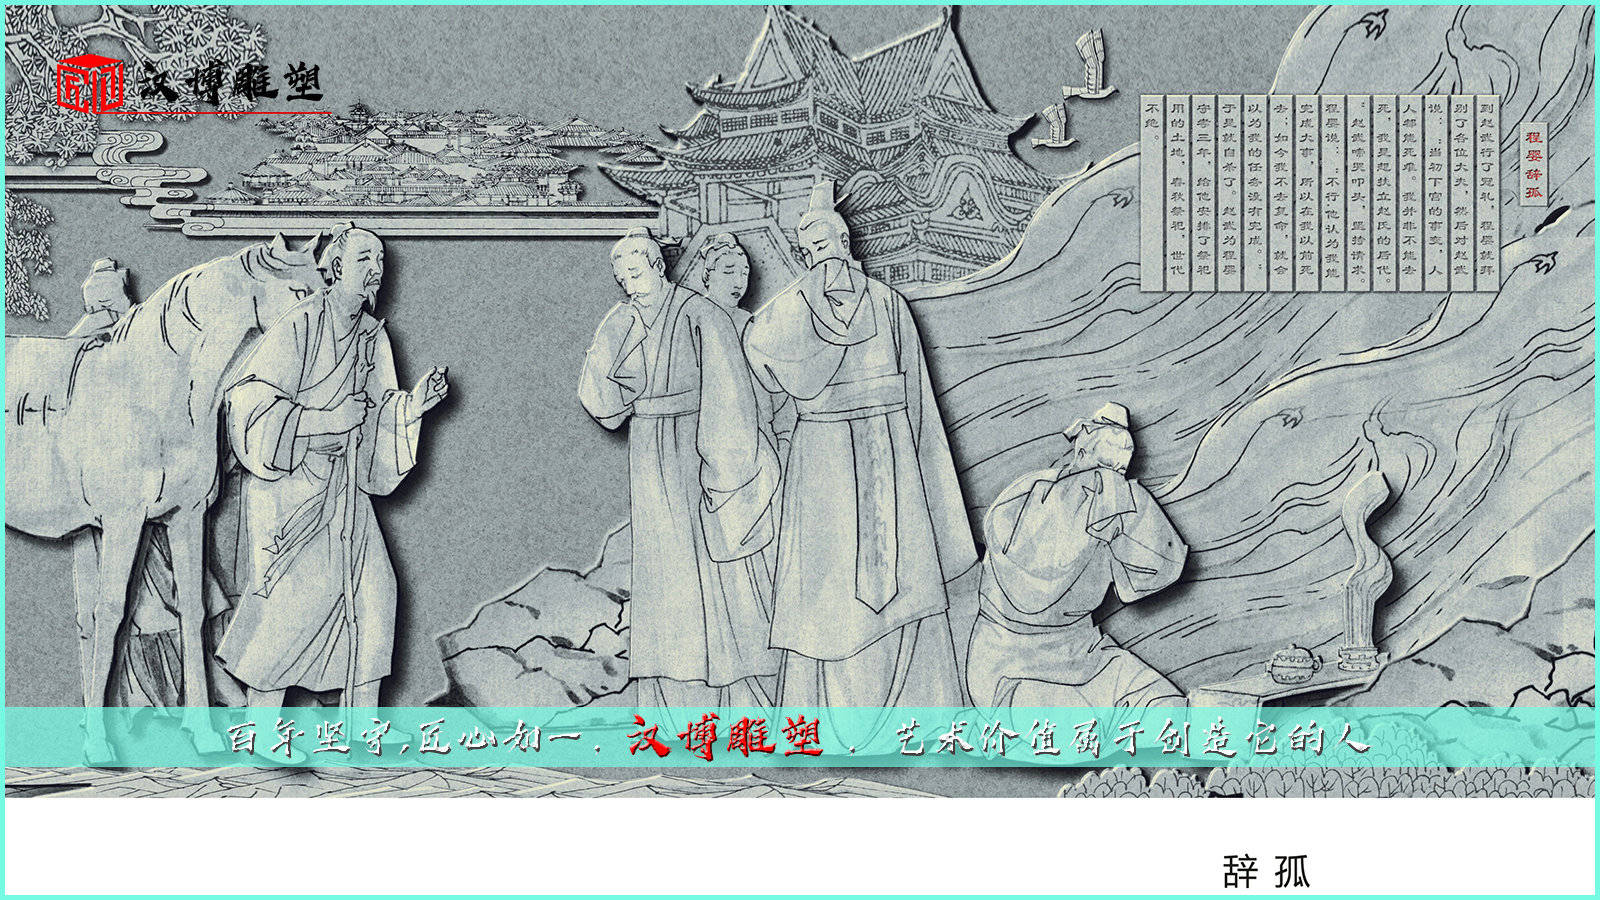 j9九游真人游戏第一品牌_
浏览赵氏孤儿雕塑 相识历史故事(图1)